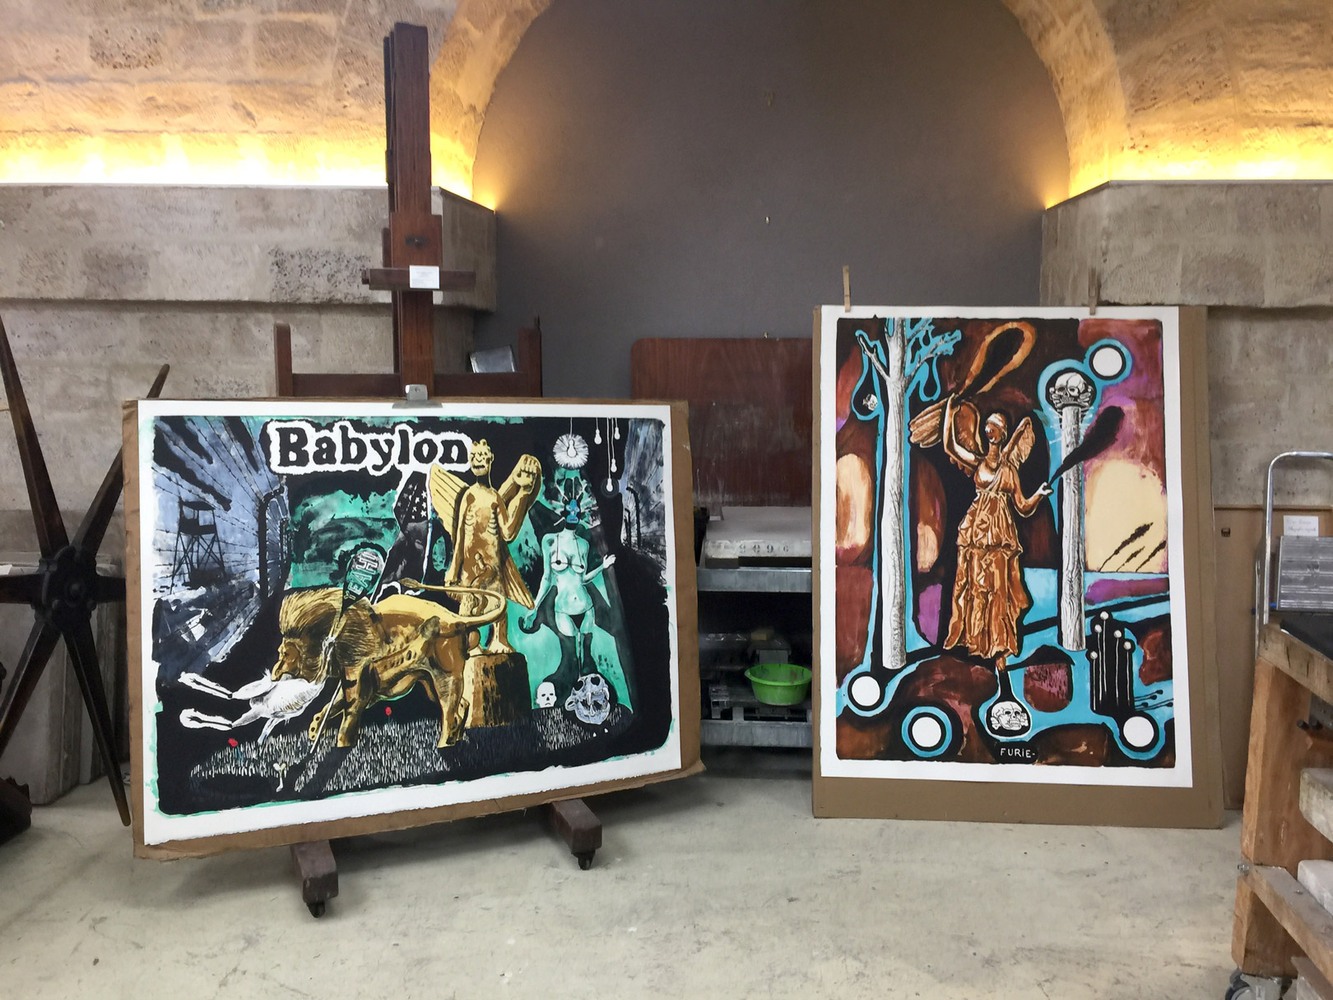 Damien DEROUBAIX - Babylon, 2017 -  Le 12 septembre, les estampes de Damien Deroubaix ont été ramenées de La Force et sont exposés dans l'atelier parisien de Stéphane Guilbaud